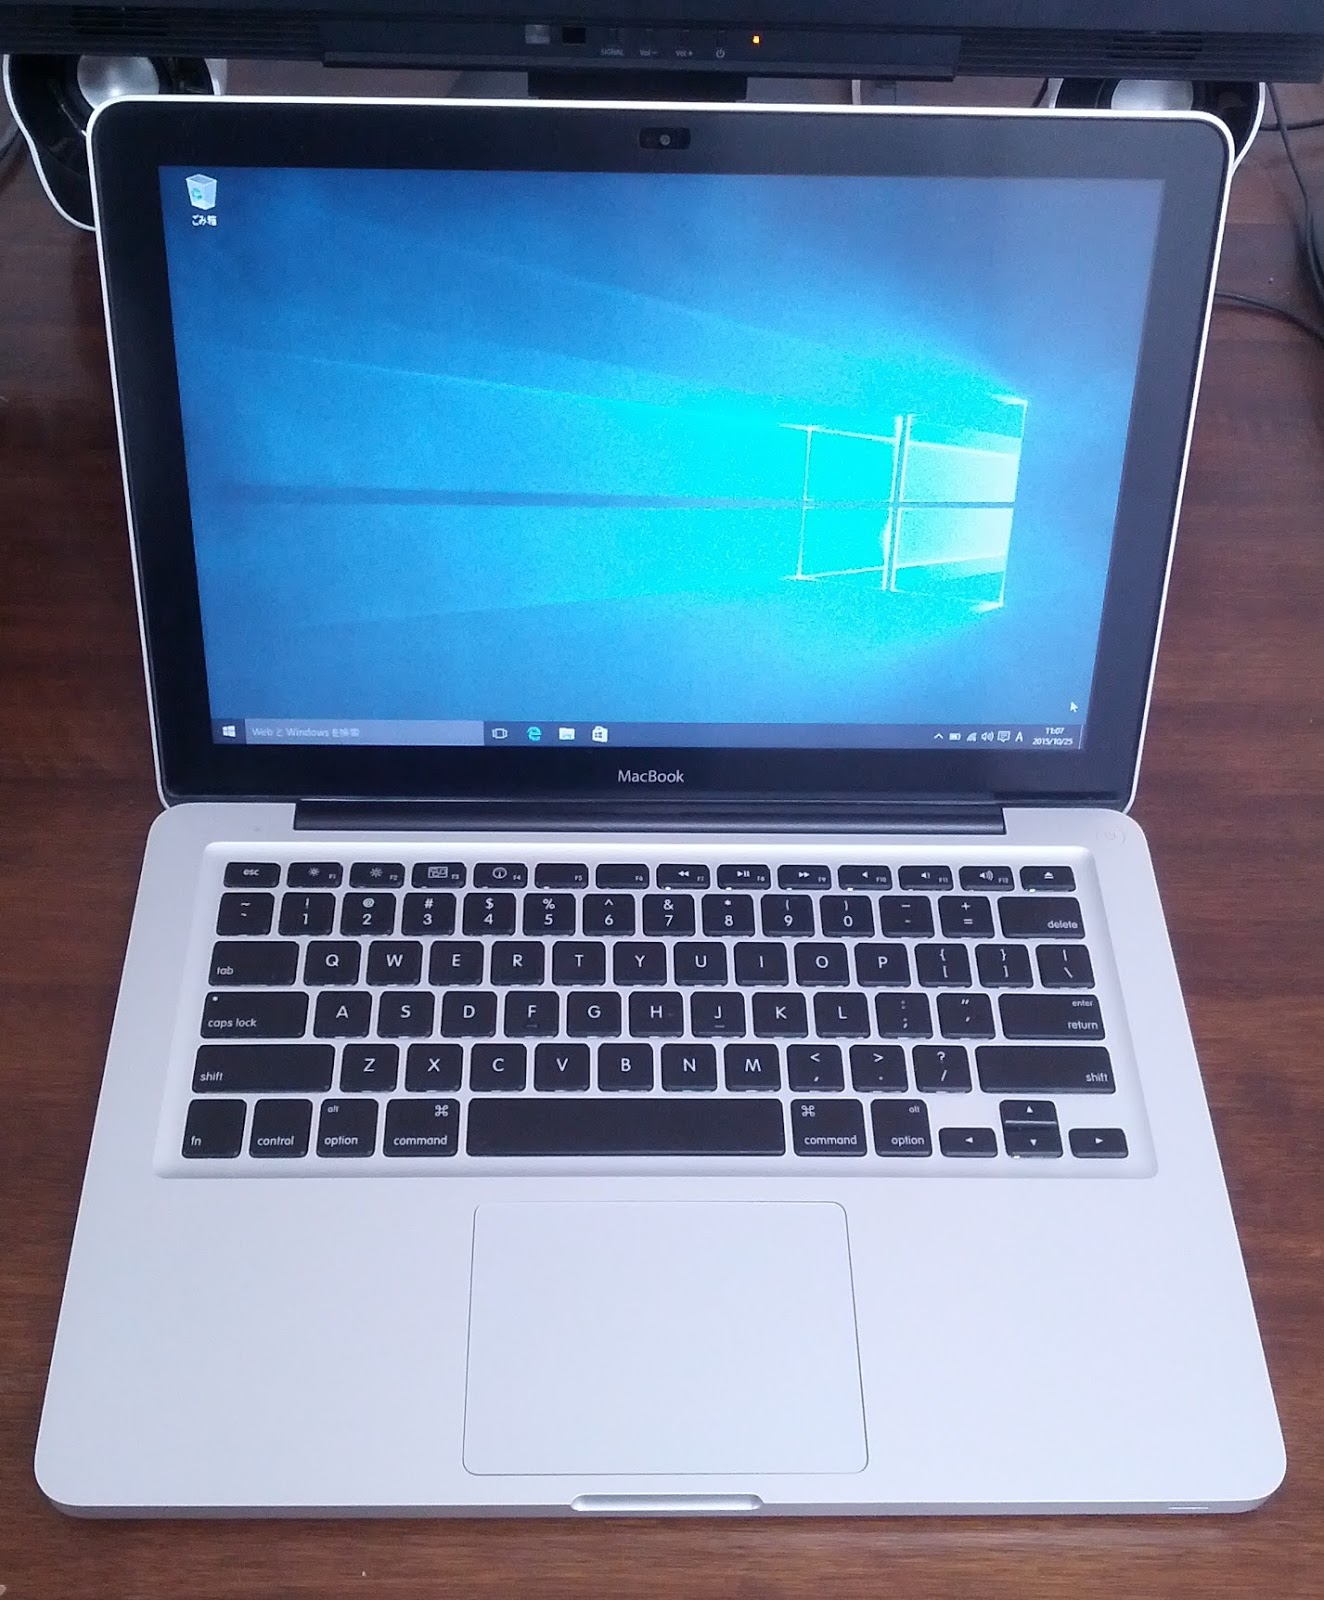 萍：ウキクサ: MacBook (13-inch, Aluminum, Late 2008)にWindows 10を 